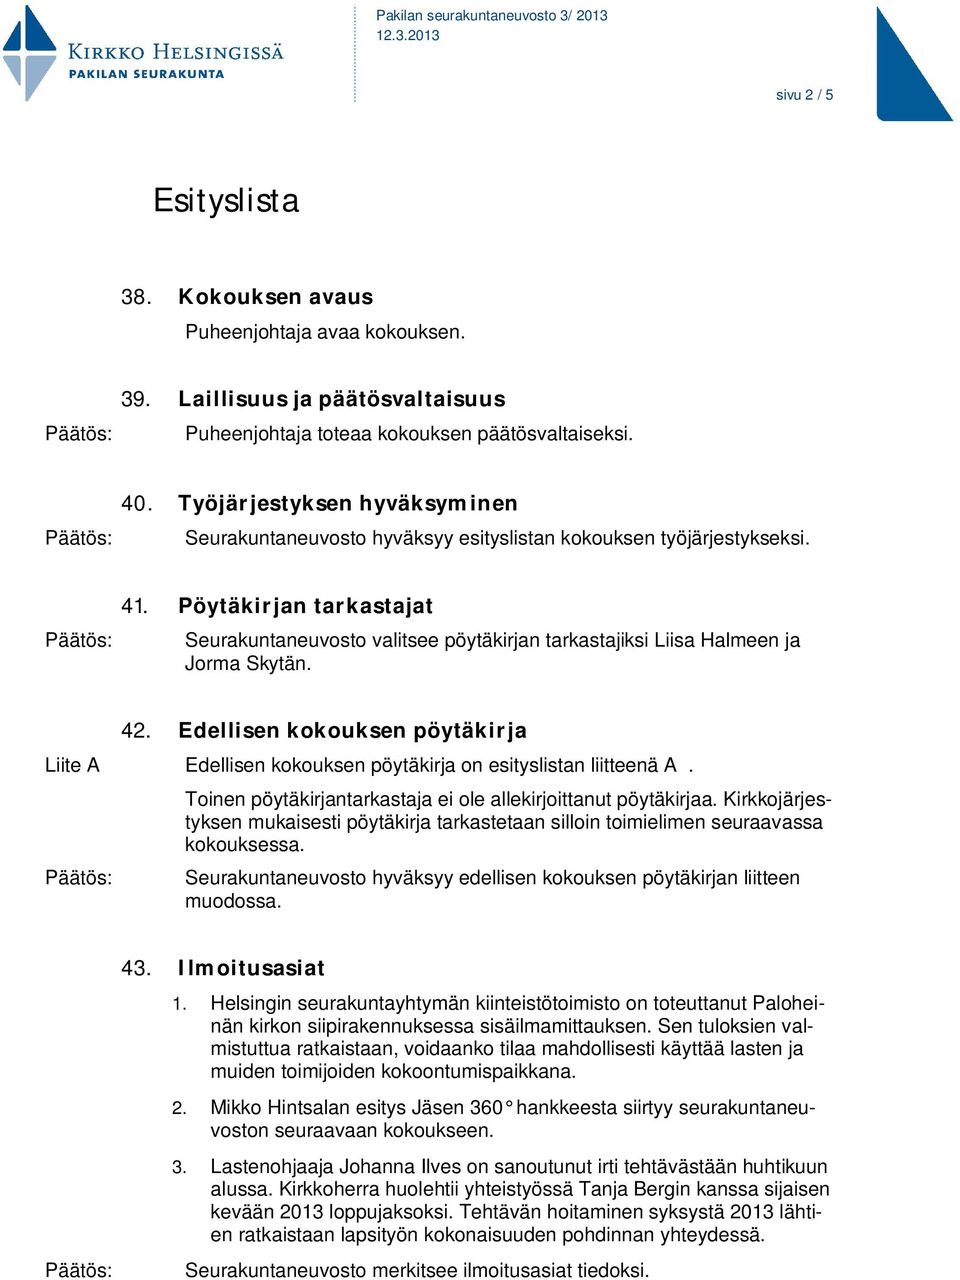 Pöytäkirjan tarkastajat Seurakuntaneuvosto valitsee pöytäkirjan tarkastajiksi Liisa Halmeen ja Jorma Skytän. 42.